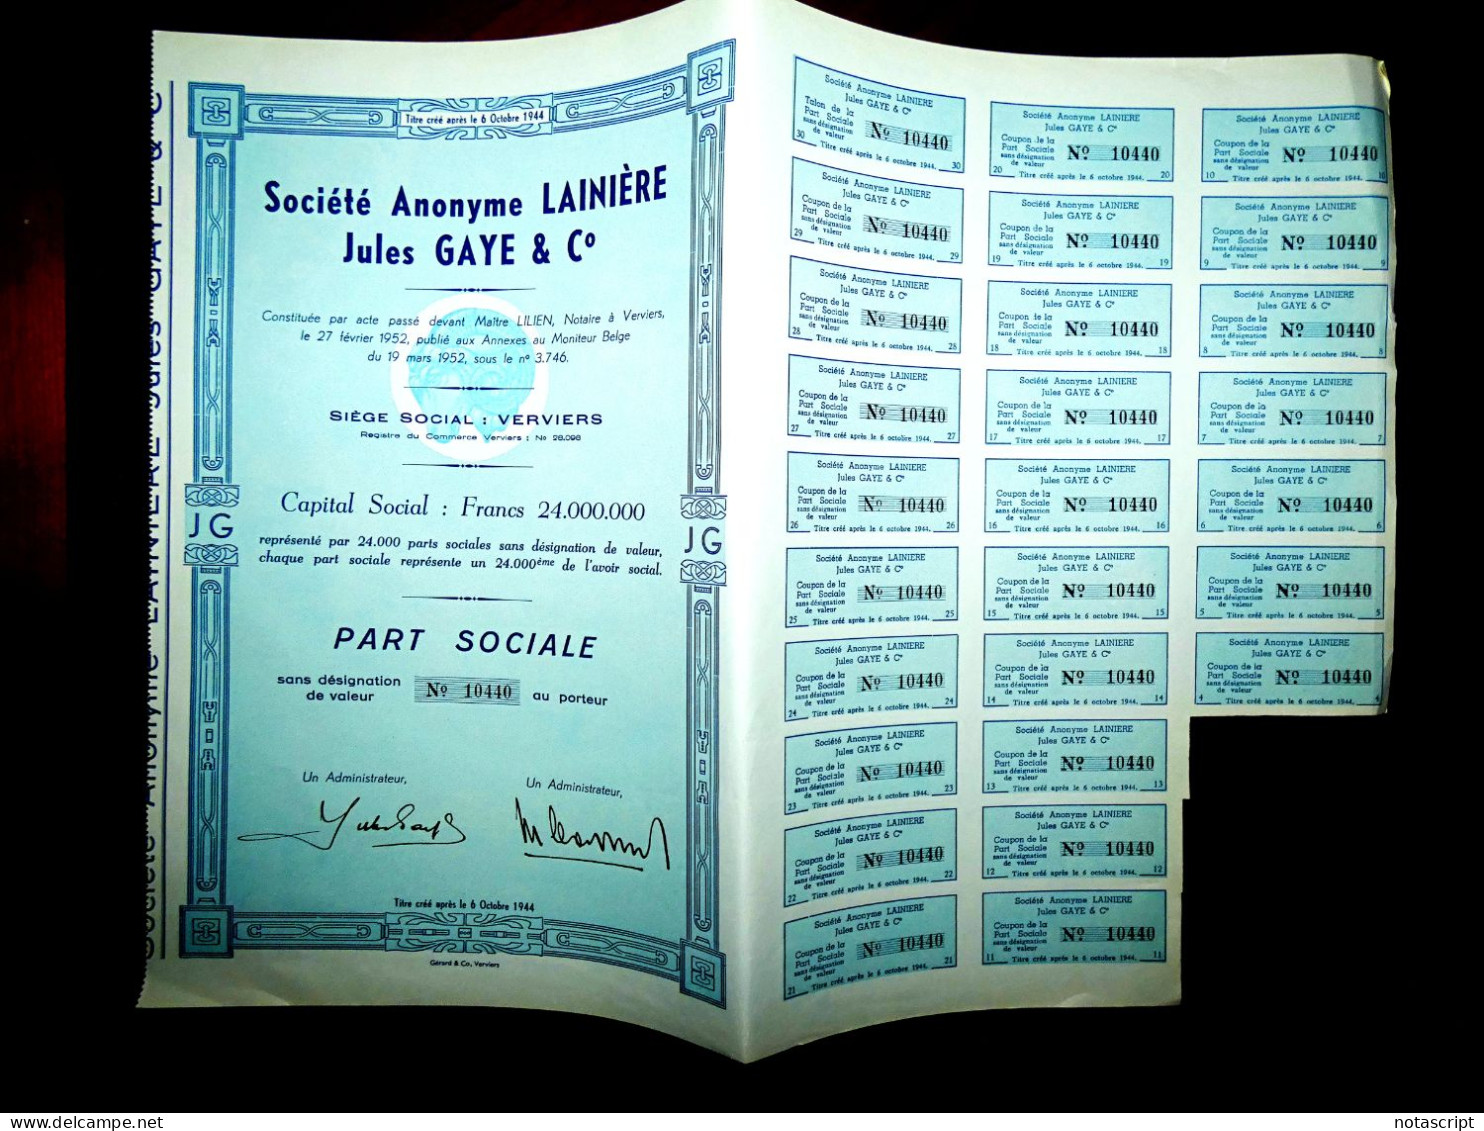 Société A,Lainière Jules Gaye & Co Verviers ,1952, Belgium Share Certificate - Textile